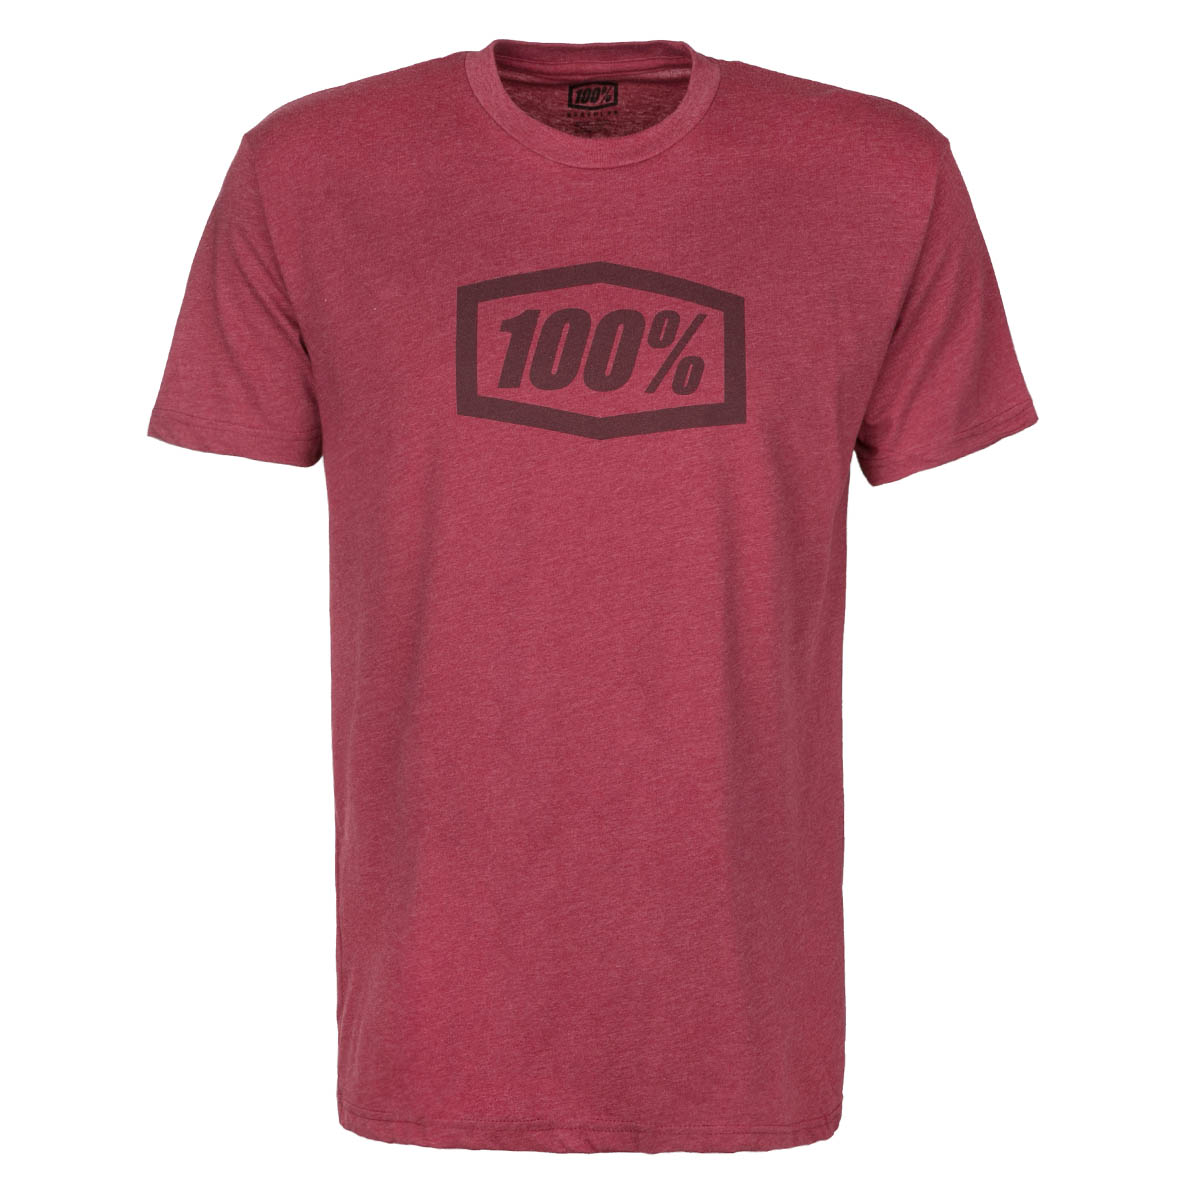 100% T-Shirt Essential Cardinal meliert